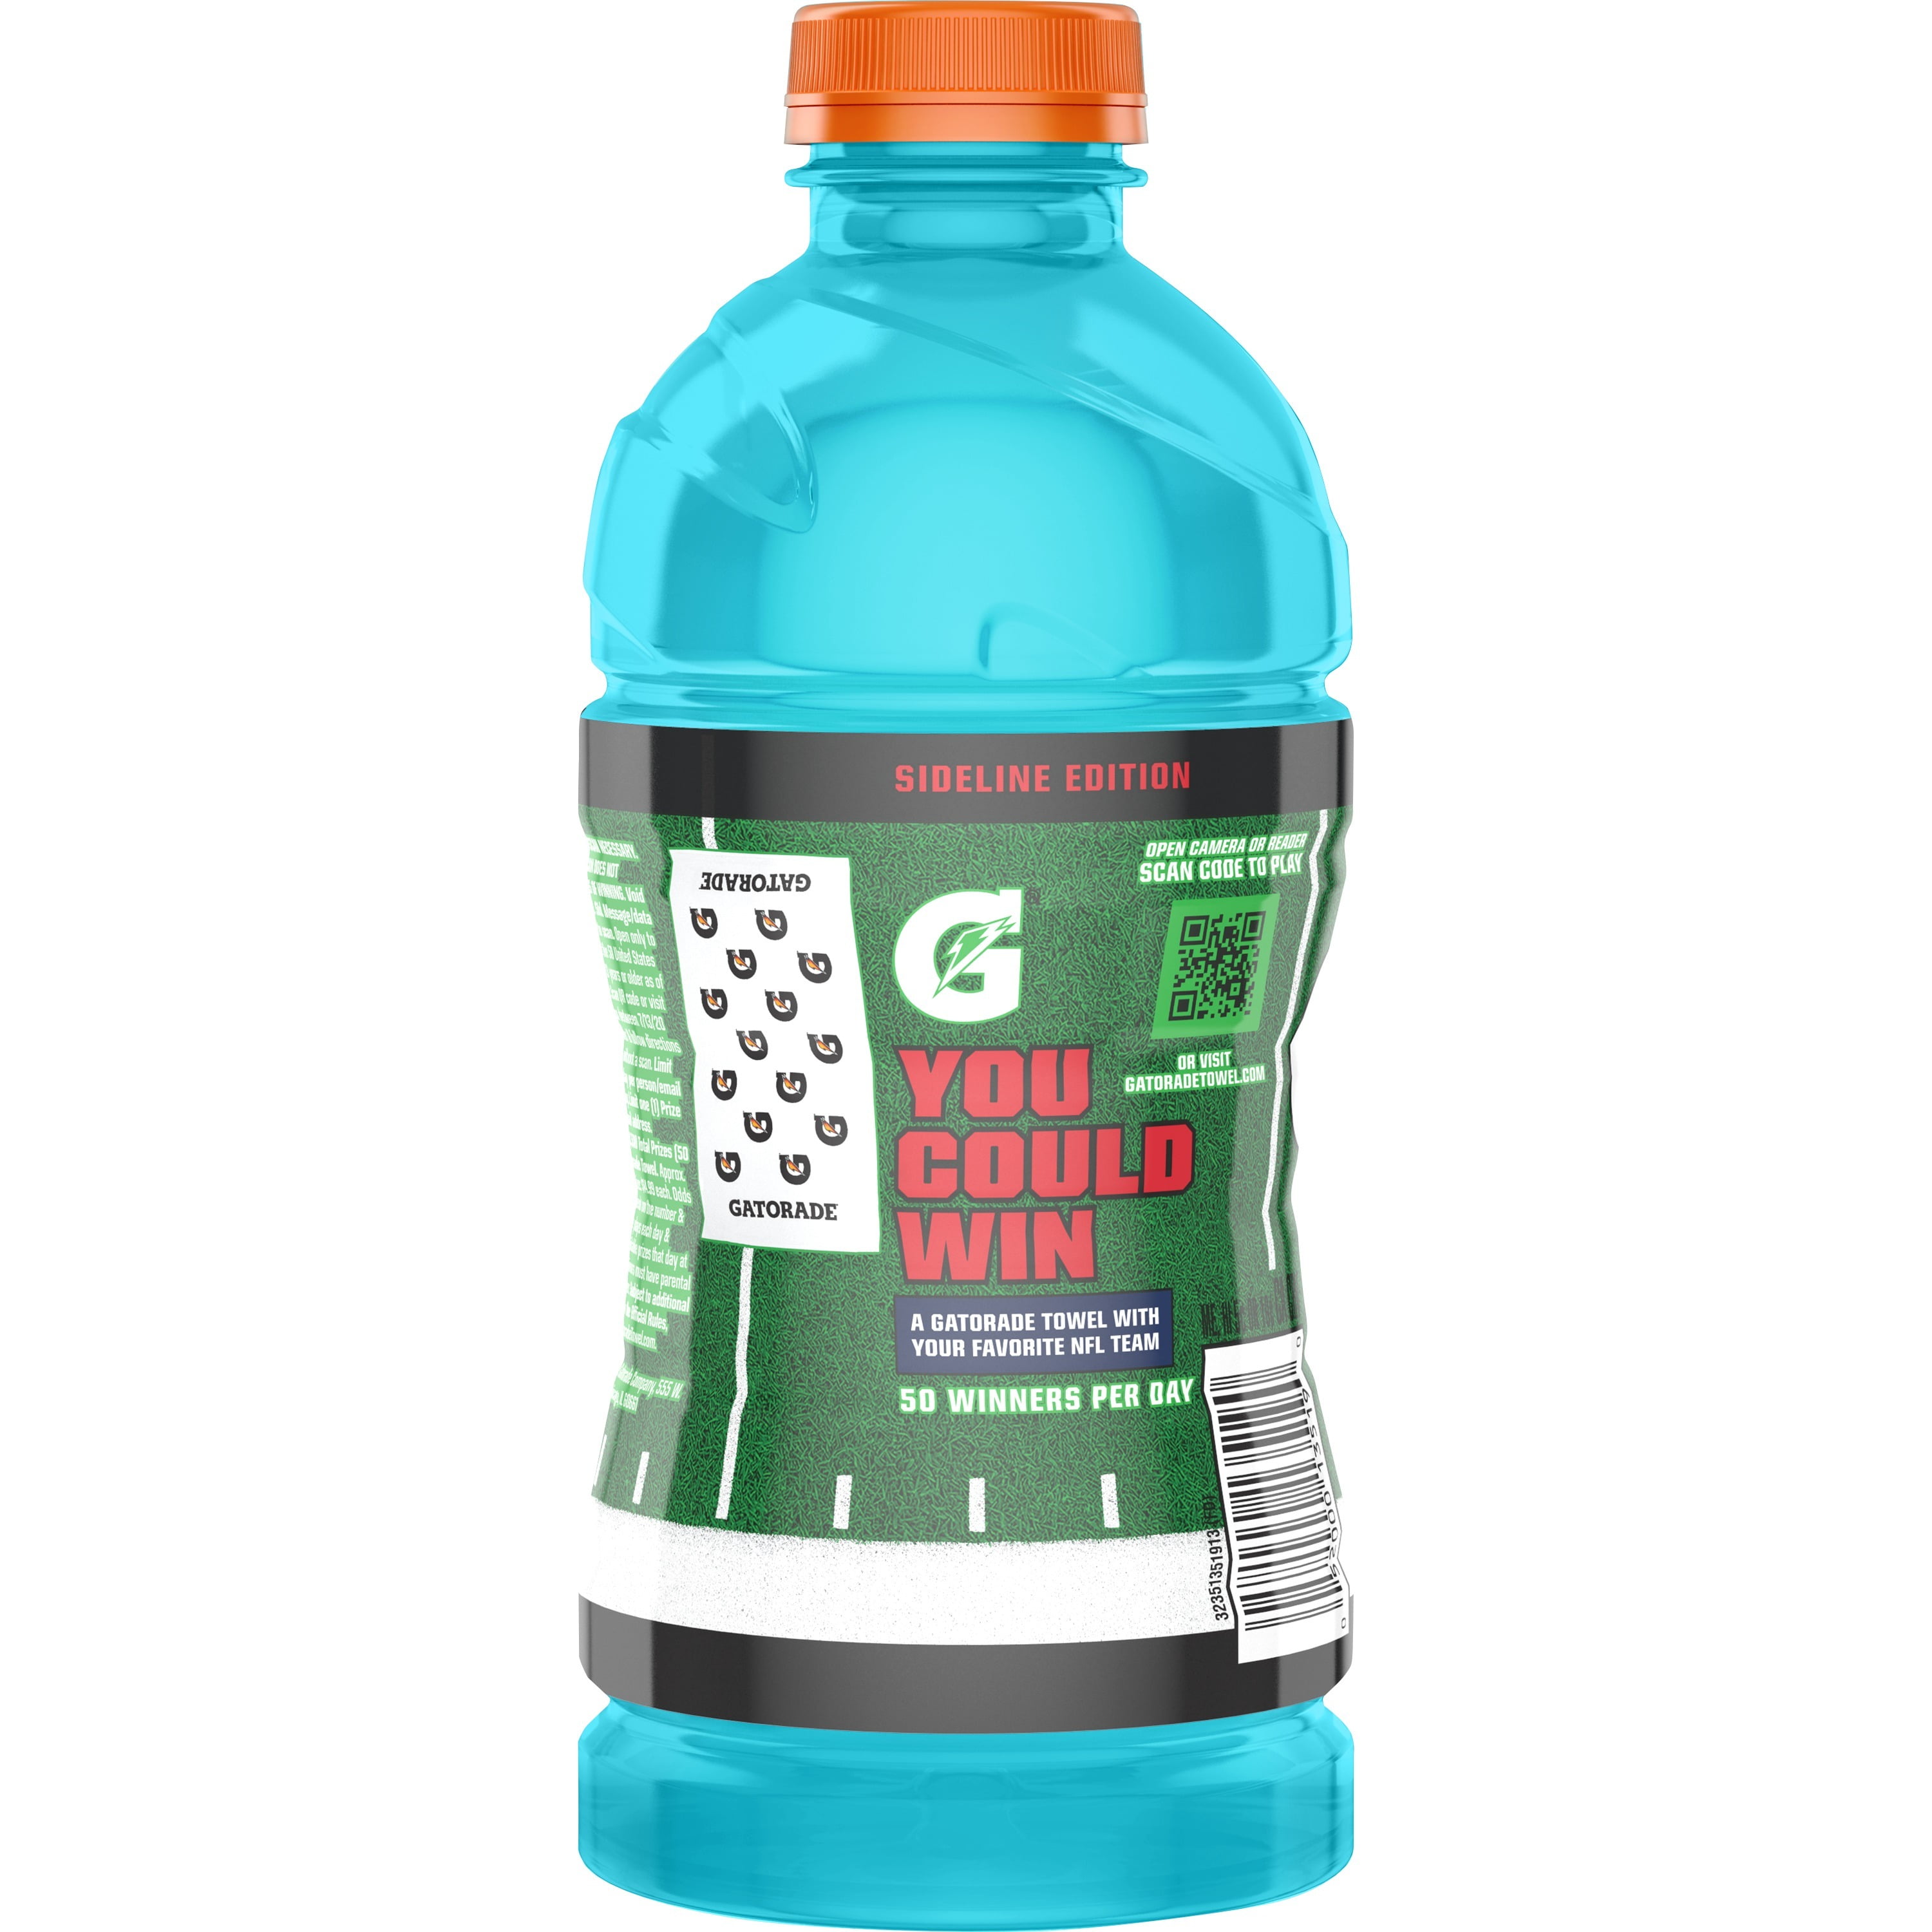 Gatorade Frost Thirst Quencher, Glacier Freeze, 28 fl oz Bottle